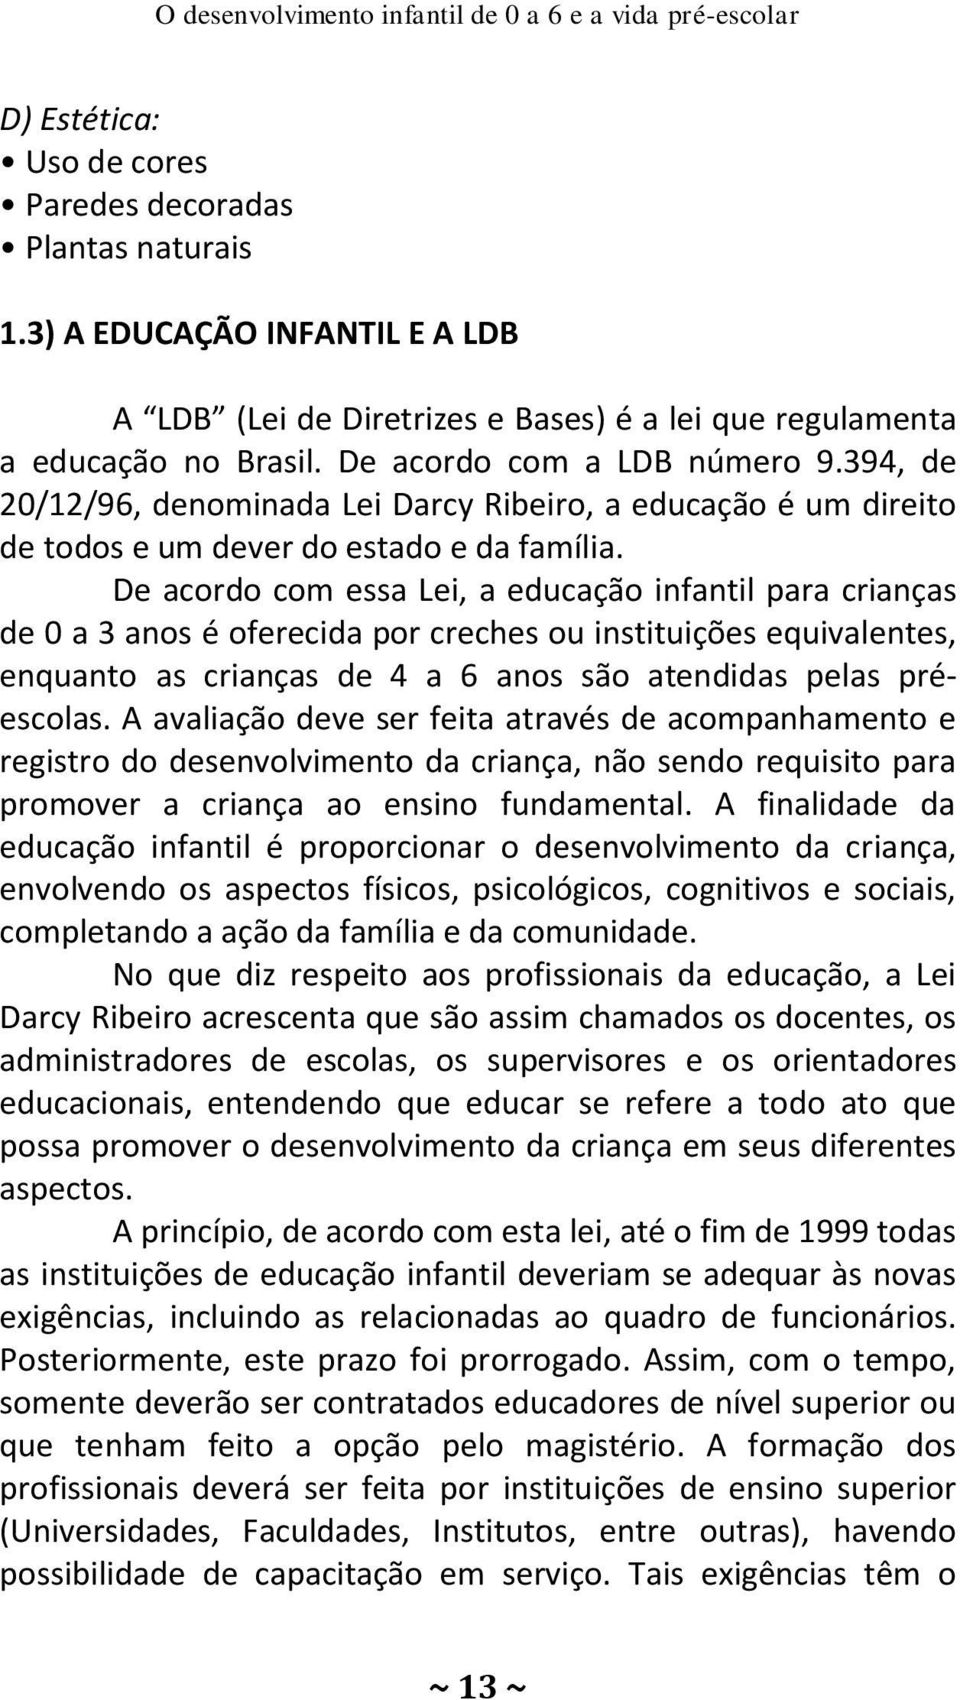 394, de 20/12/96, denominada Lei Darcy Ribeiro, a educação é um direito de todos e um dever do estado e da família.